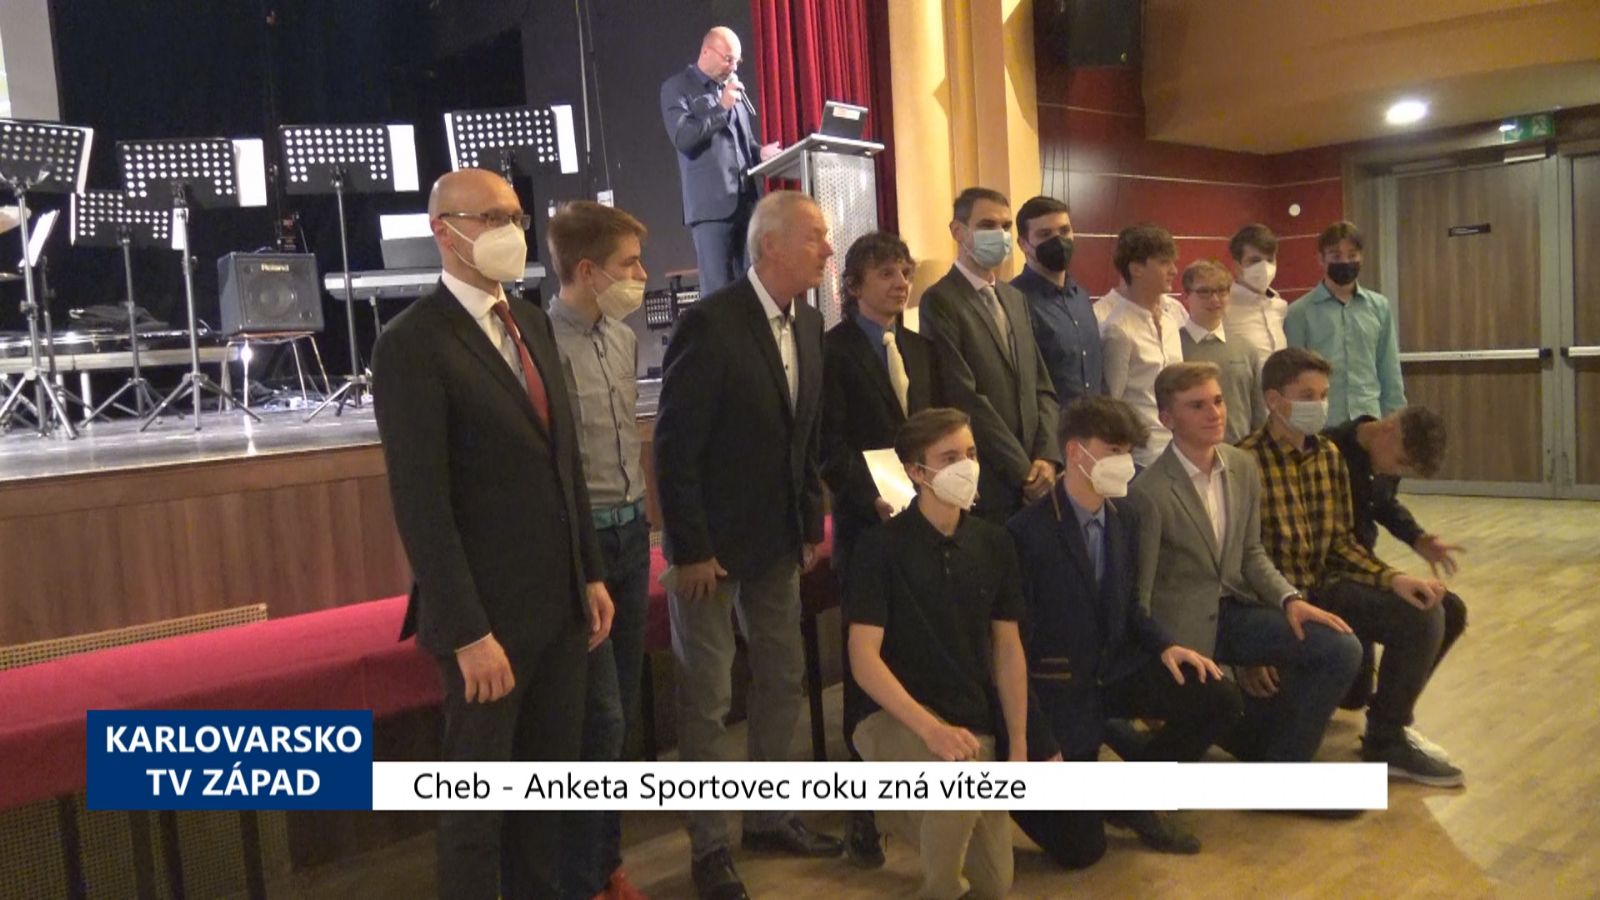 Cheb: Anketa Sportovec roku zná vítěze (TV Západ)